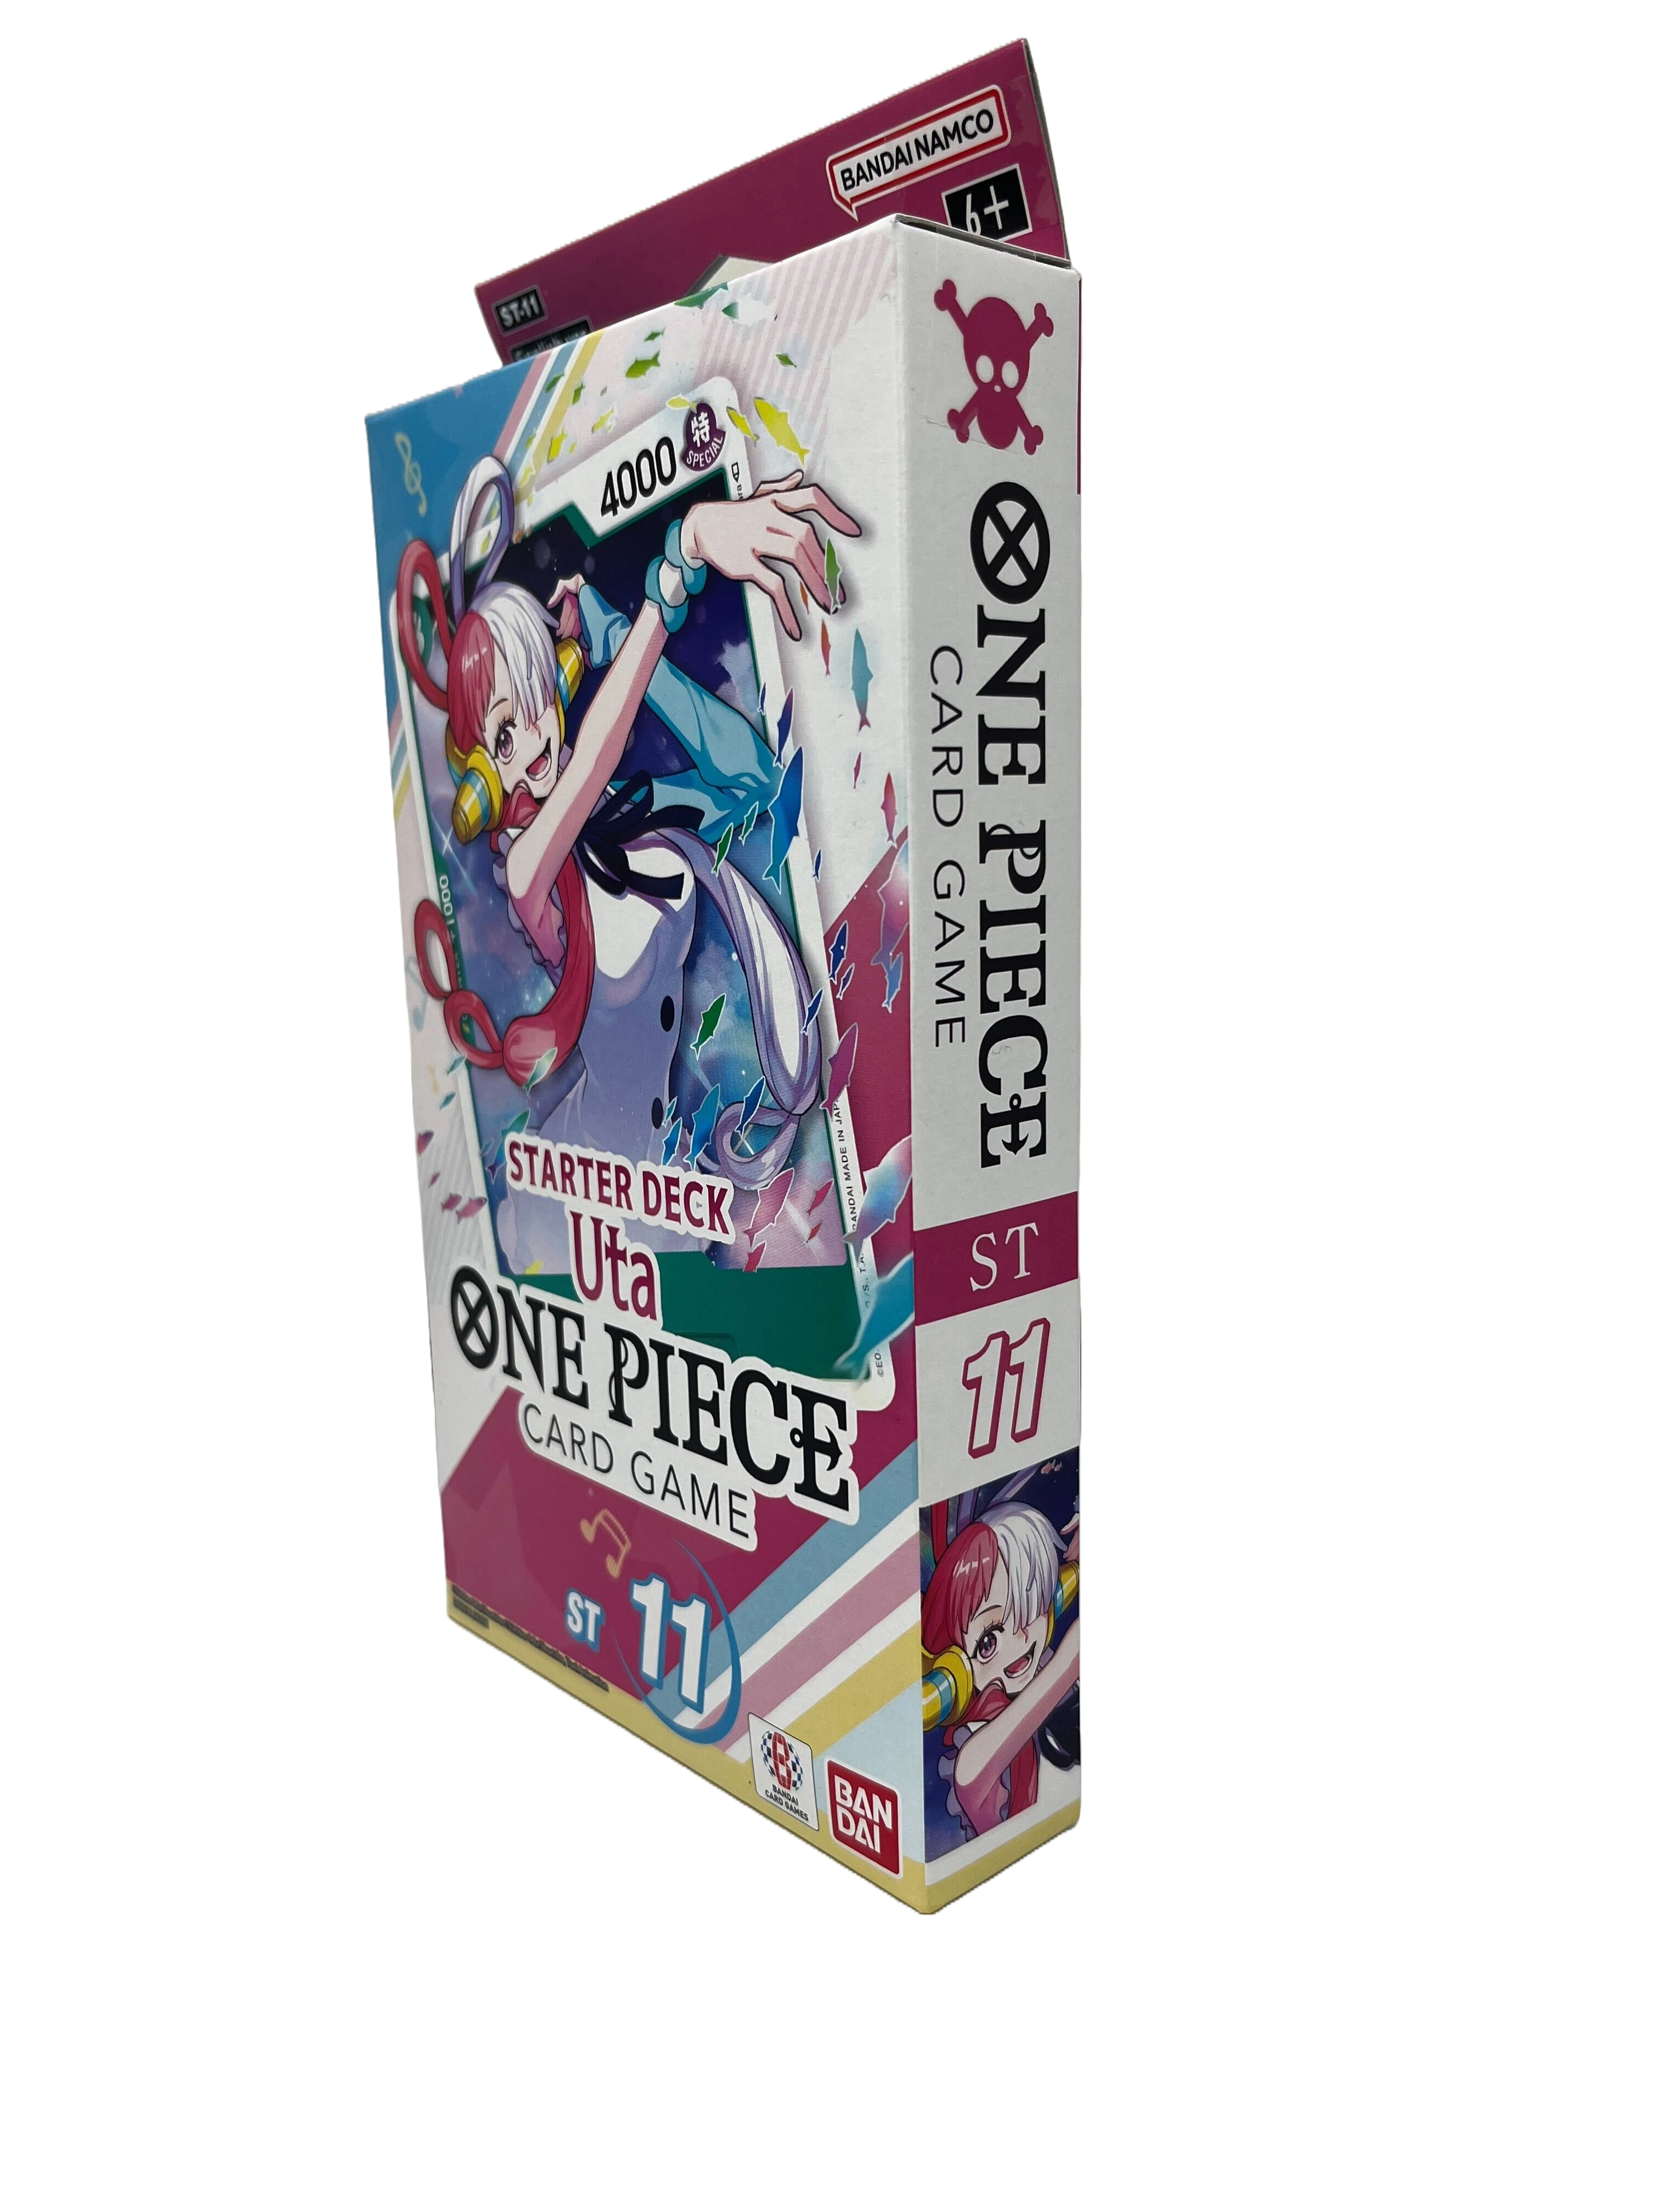 One Piece Card Game Starter Deck - UTA - Miraj Trading